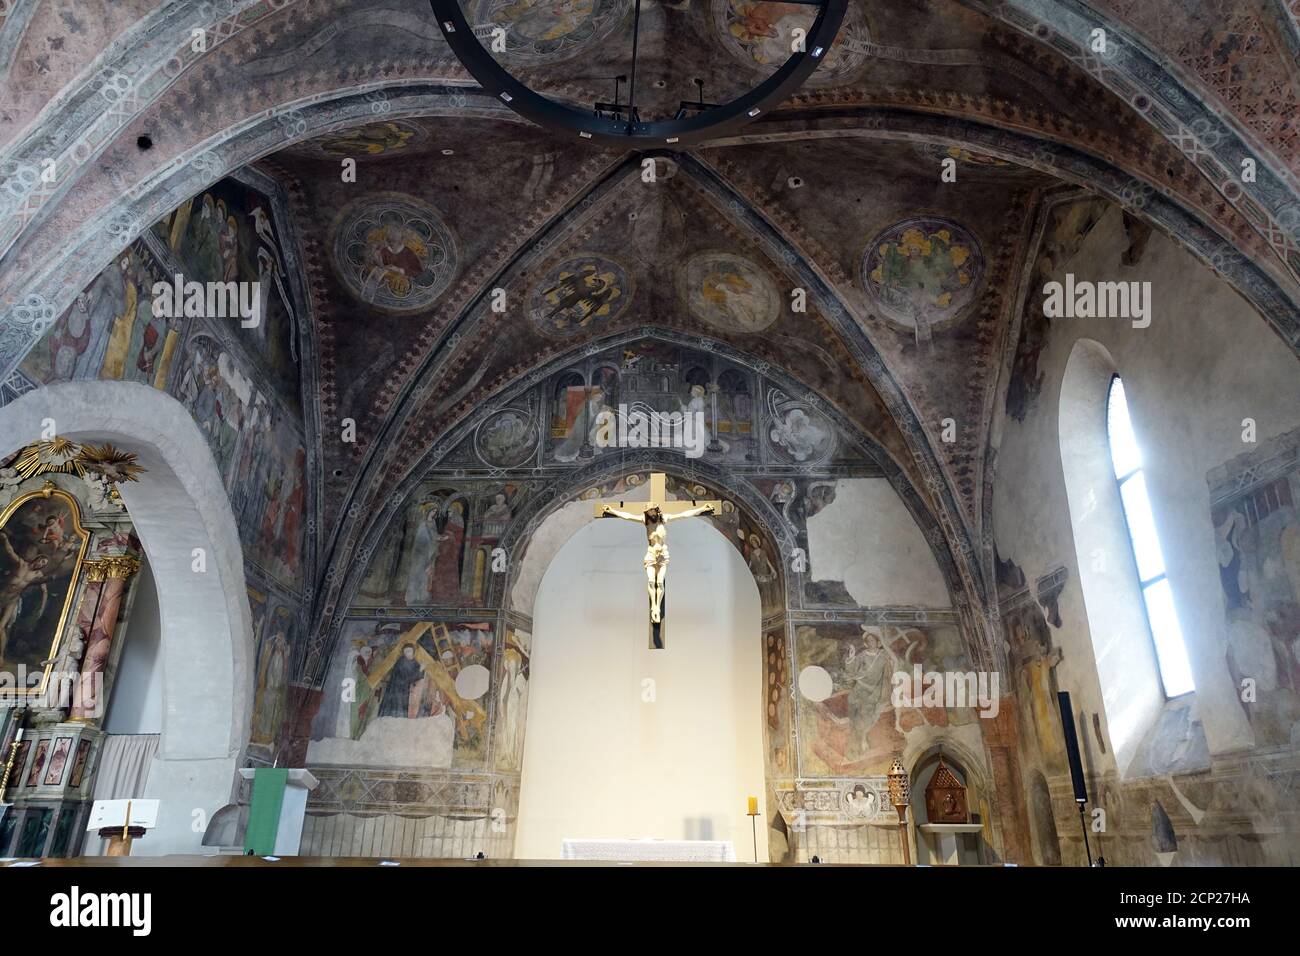 kunstvolle Fresken in der Spitalkirche zum Heiligen Geist, Sterzing, Südtirol, Italien Stock Photo